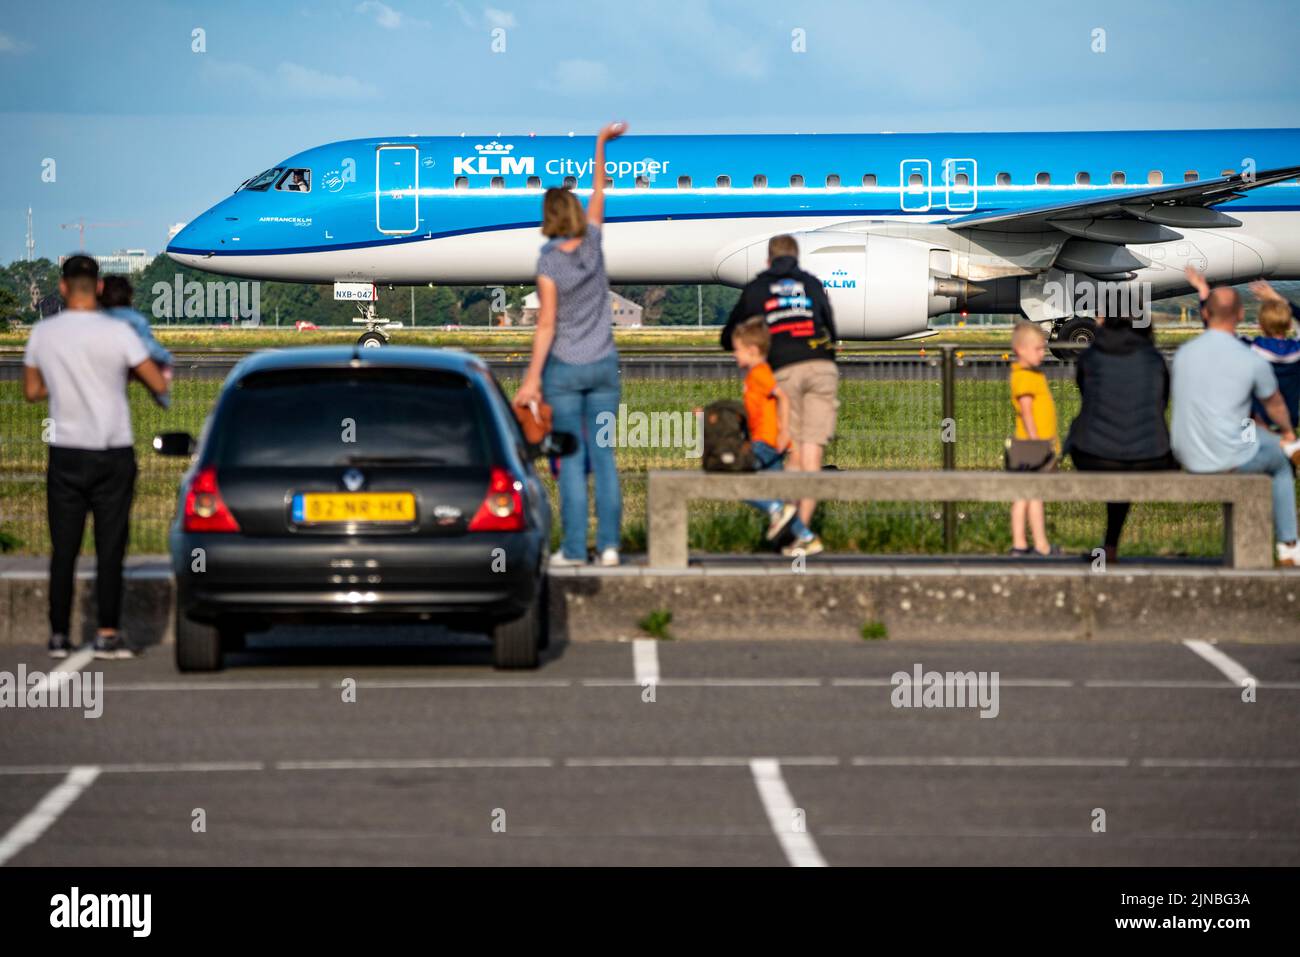 Aeroporto di Amsterdam Shiphol, Ponderbaan, una delle 6 piste, spot, vedere aerei da vicino, KLM aereo, Foto Stock